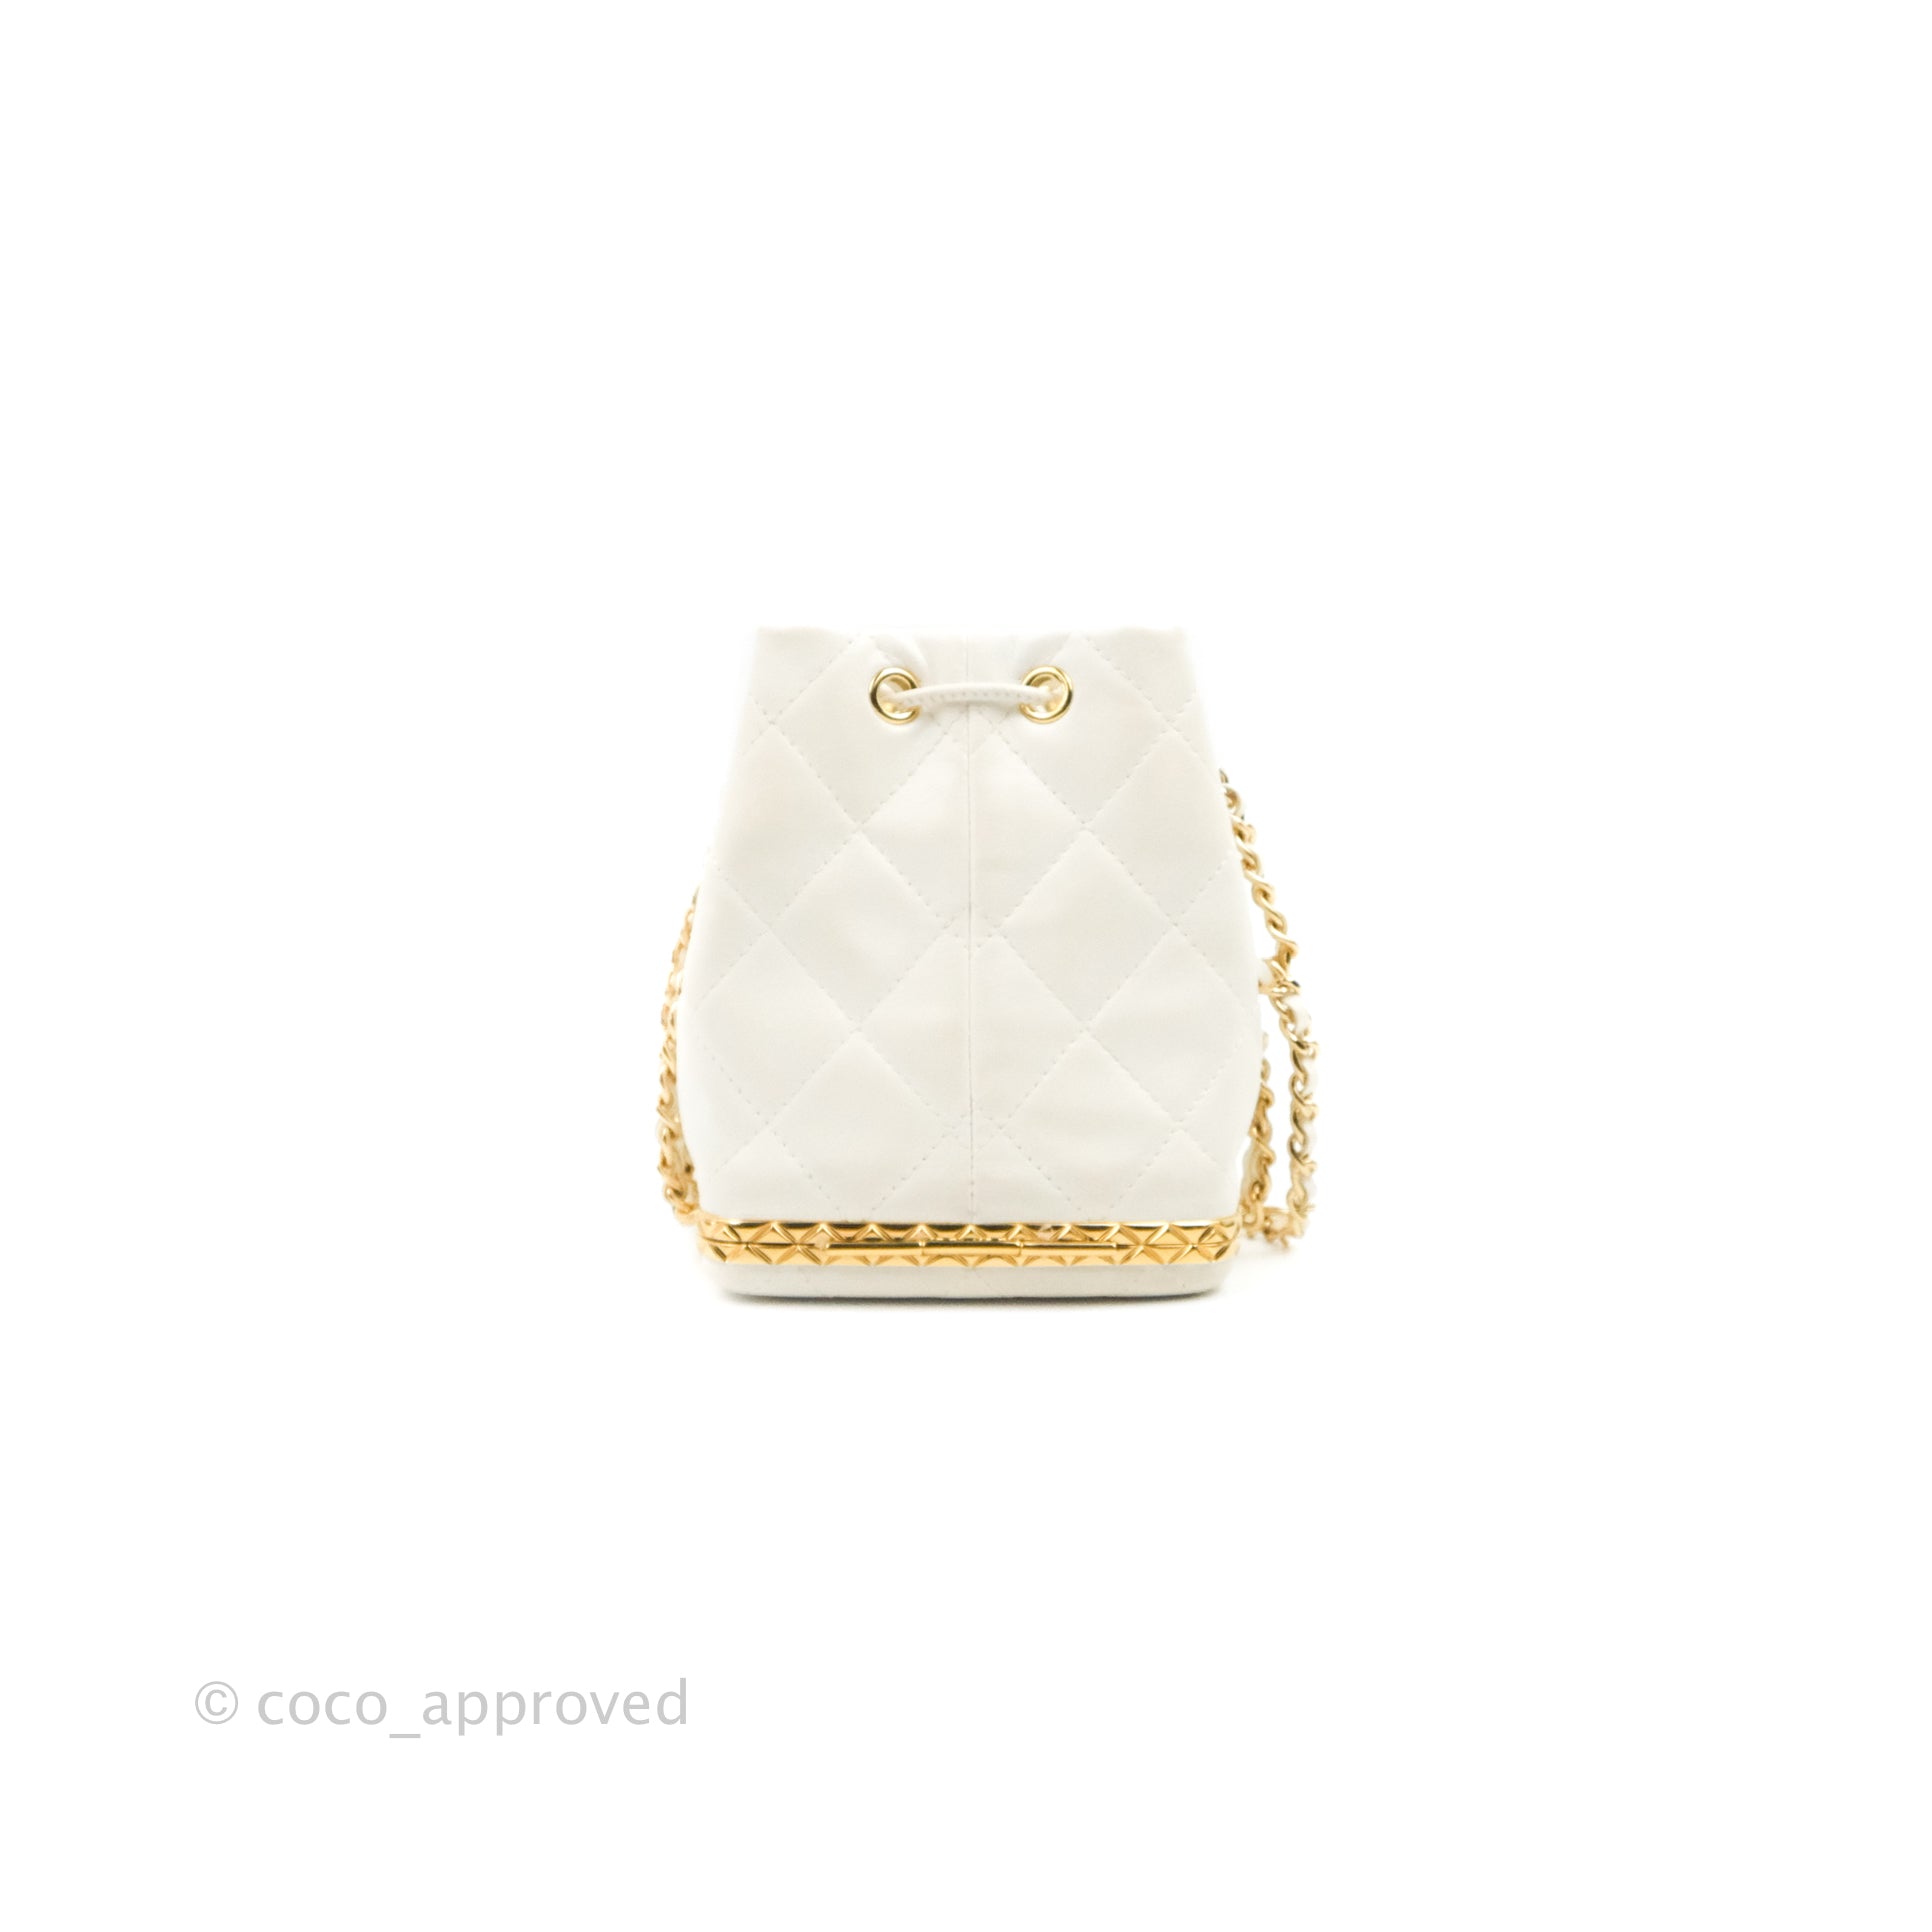 Chanel Mini Bucket Bag AP3111 B09805 10601, White, One Size